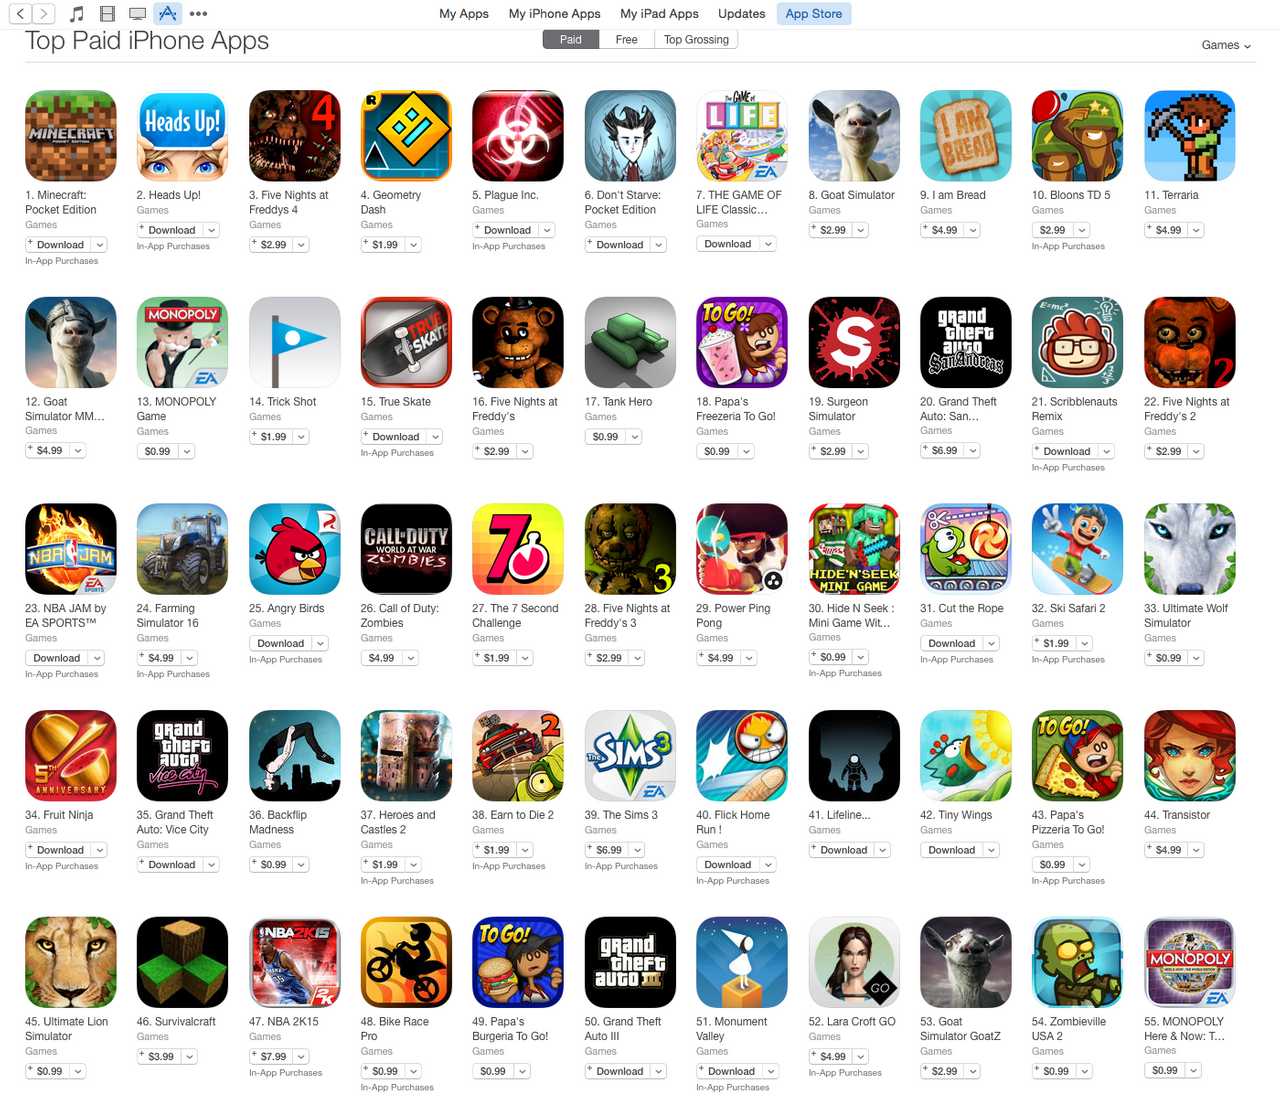 Games download store. Популярные игры в APPSTORE. Приложение с играми для айфона. Какие популярные игры. Логотипы популярных игр.